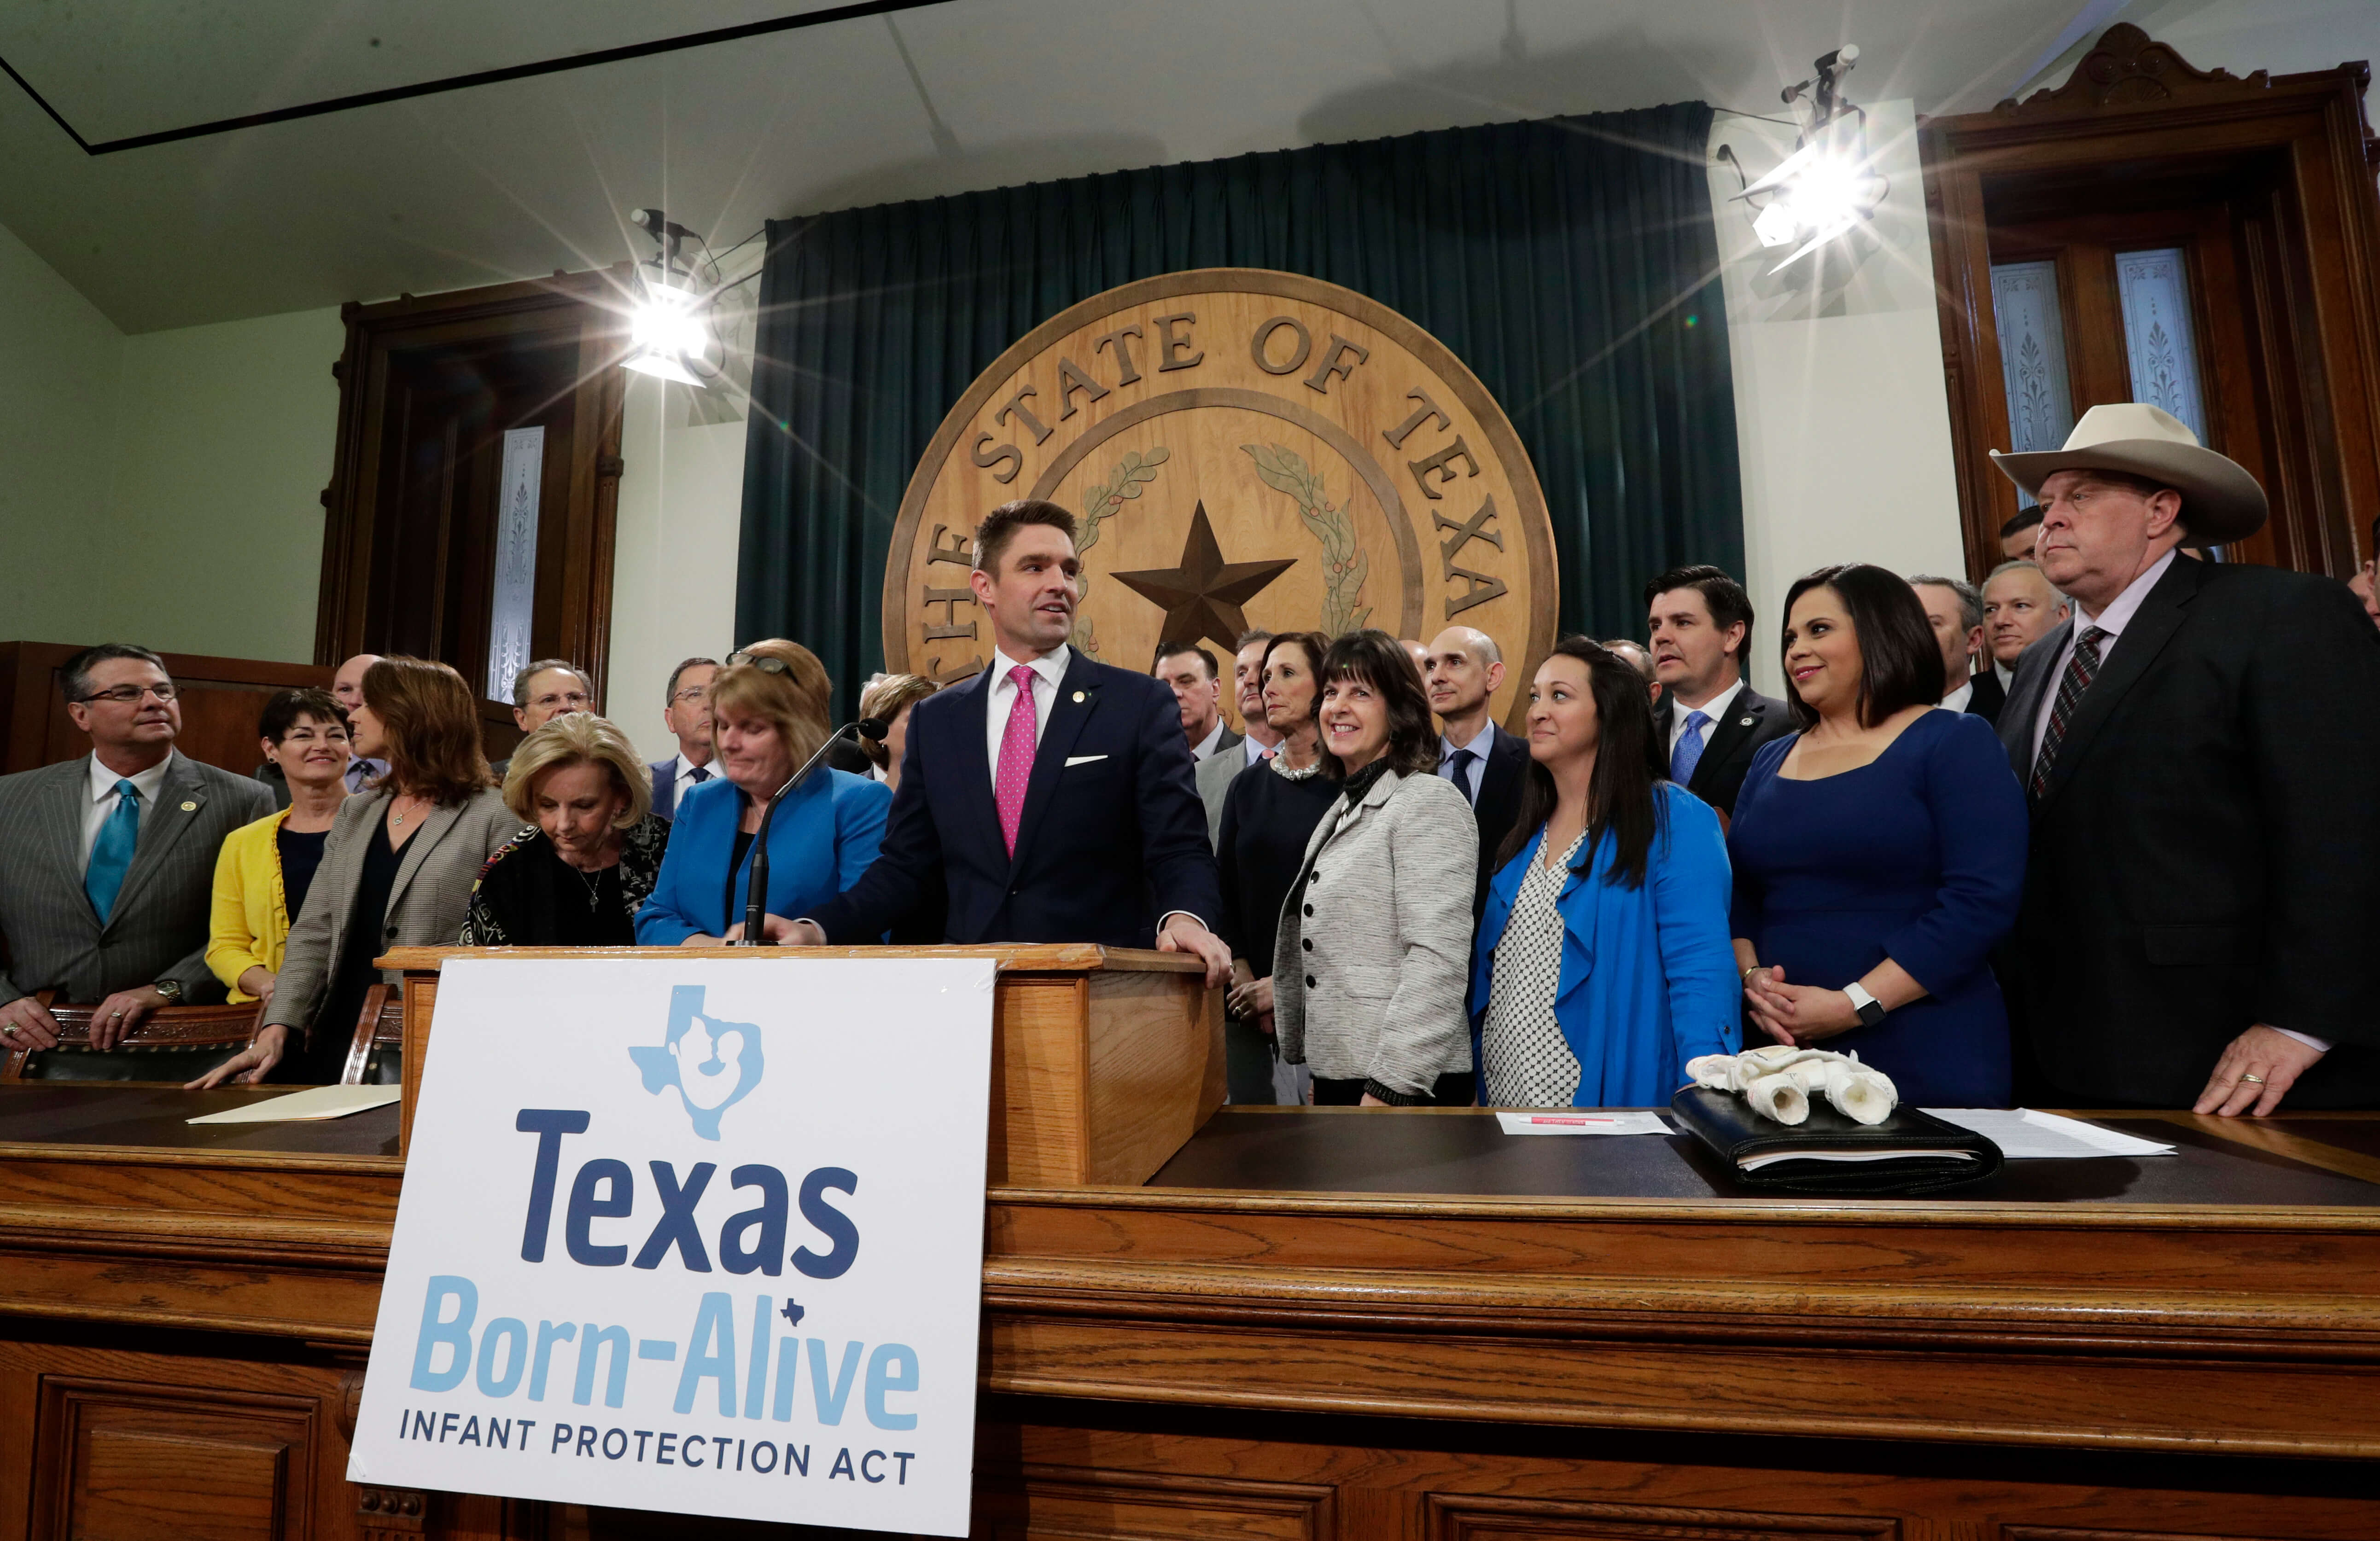 FOTO Legisladores de Texas buscan castigar el aborto con pena de muerte 7 MARZO 2019